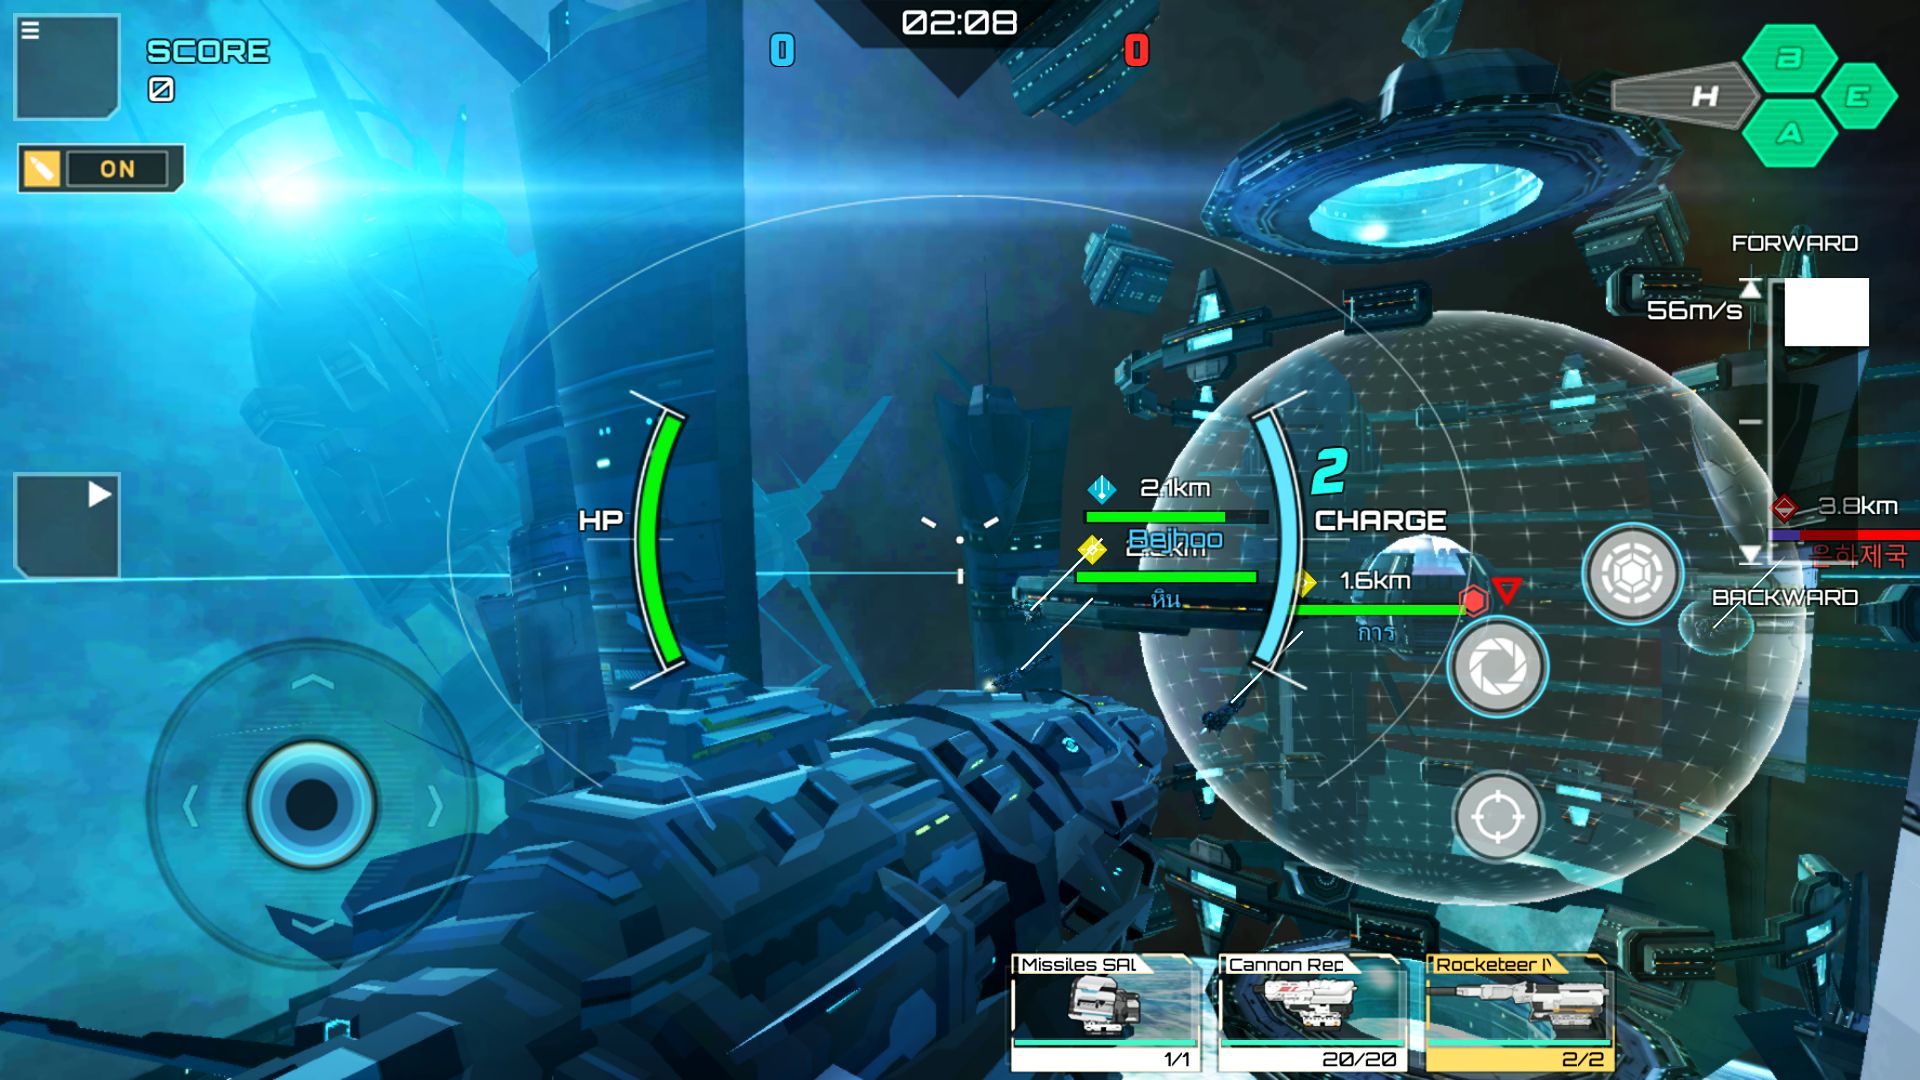 Iron Space: Real-time Spaceship Team Battles captura de pantalla 1